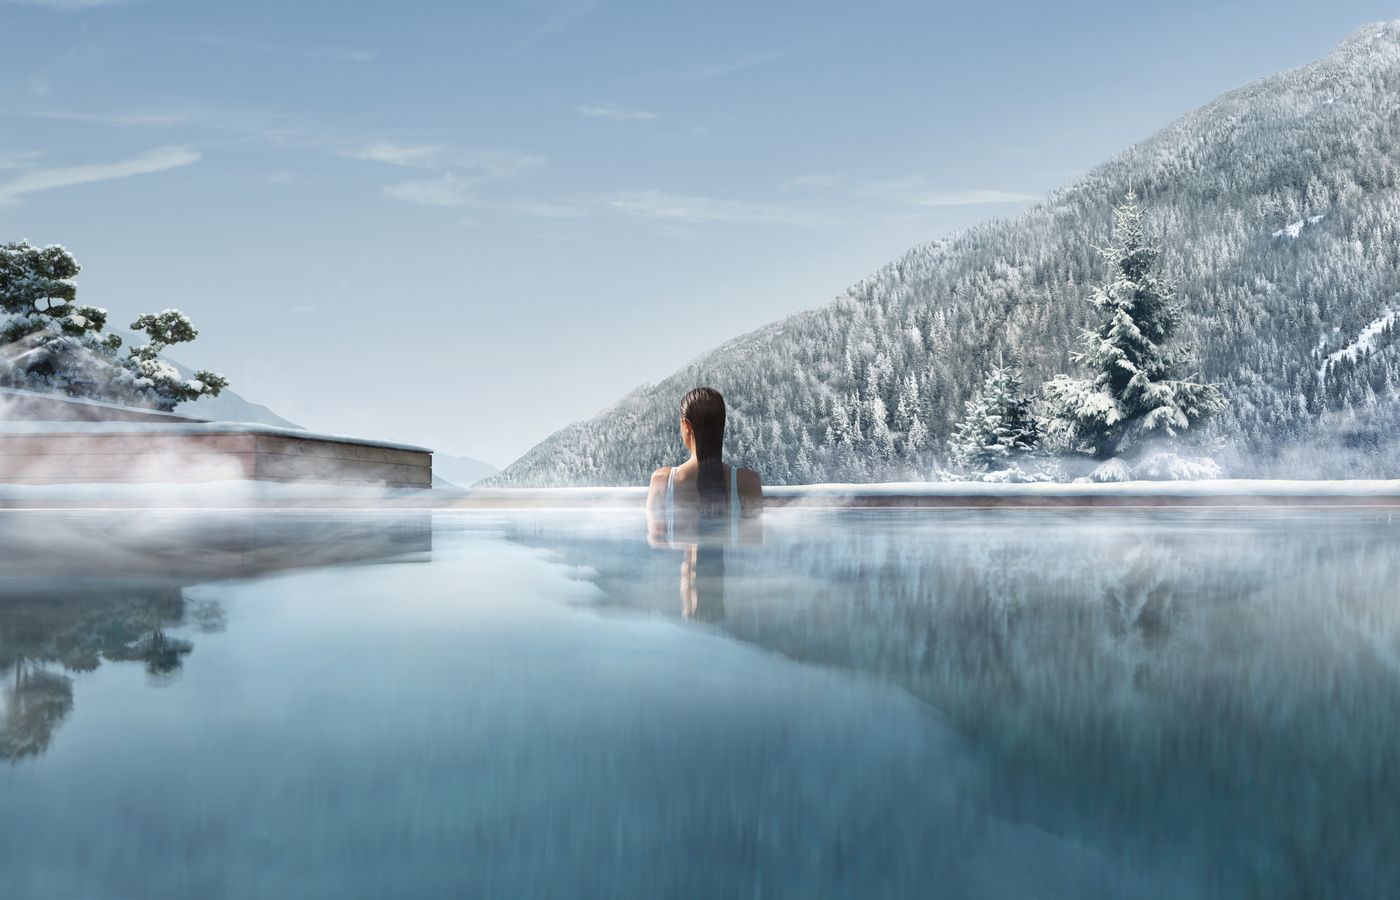 Trip Schweiz - FitReisen - Lefay Resort & Spa Dolomiti in Pinzolo buche jetzt Deinen Wellness & Beauty Urlaub im Lefay Resort & Spa Dolomiti in der Region Südtirol, in Italien günstig bei uns!